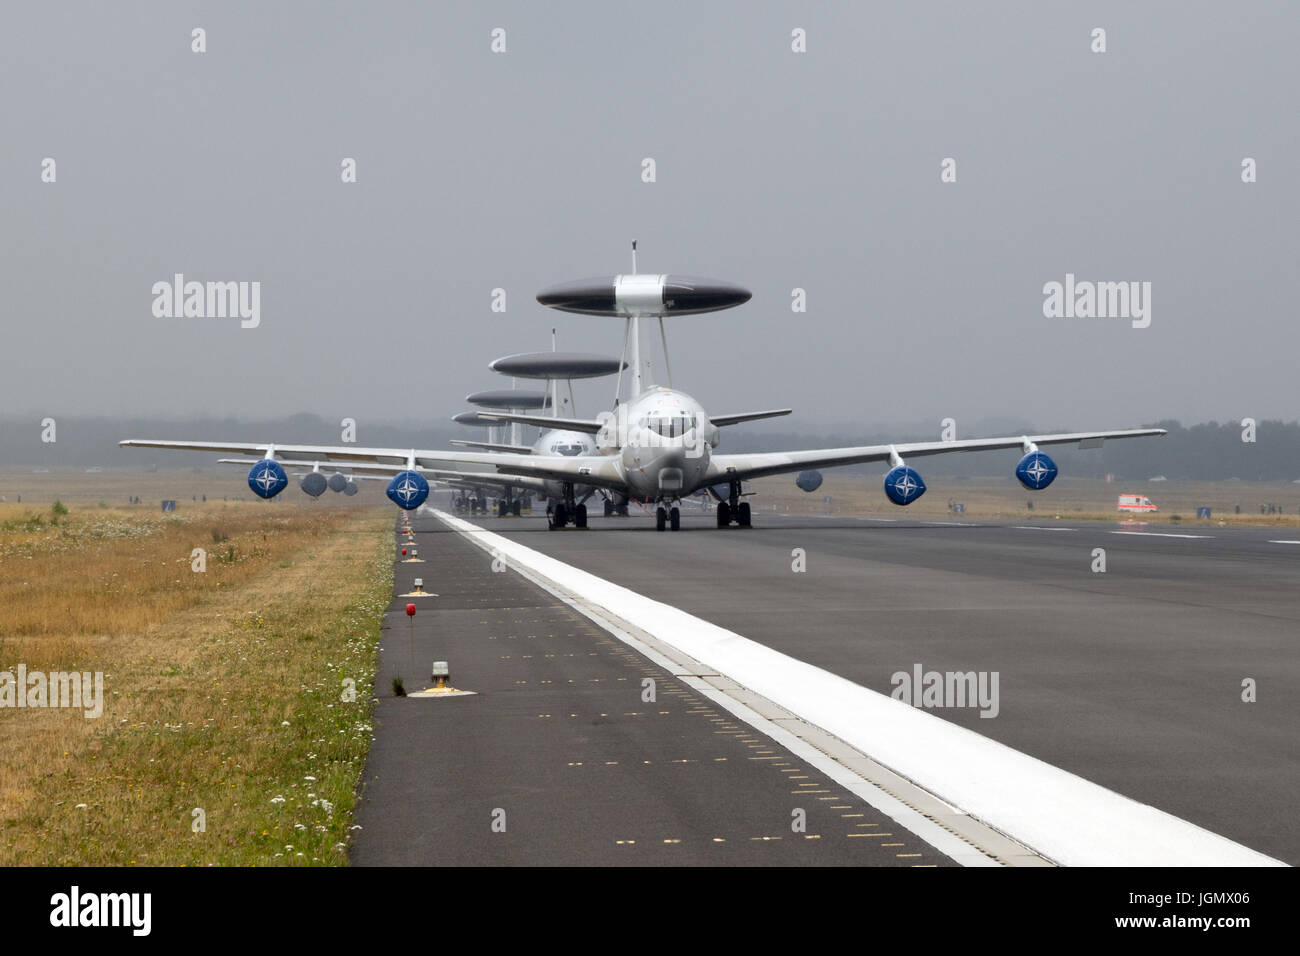 GEILENKIRCHEN, Allemagne - Jul 2, 2017 Rang de l'OTAN : Boeing E-3 Sentry avions radar AWACS sur la piste de la base aérienne de Geilenkirchen. Banque D'Images